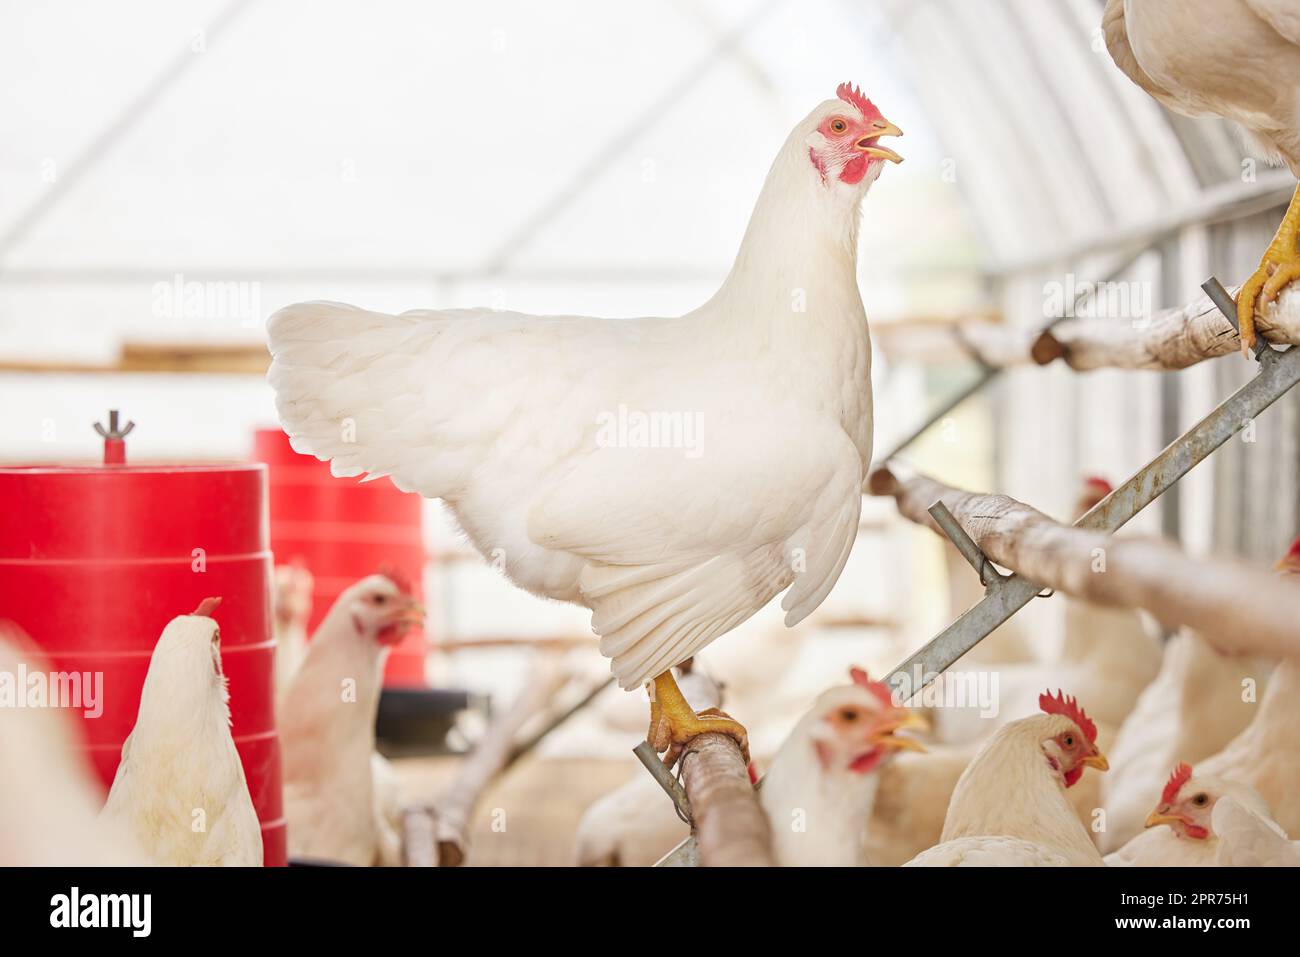 Questo piccolo pollo ha qualcosa da dire. Shot di polli in una fattoria. Foto Stock